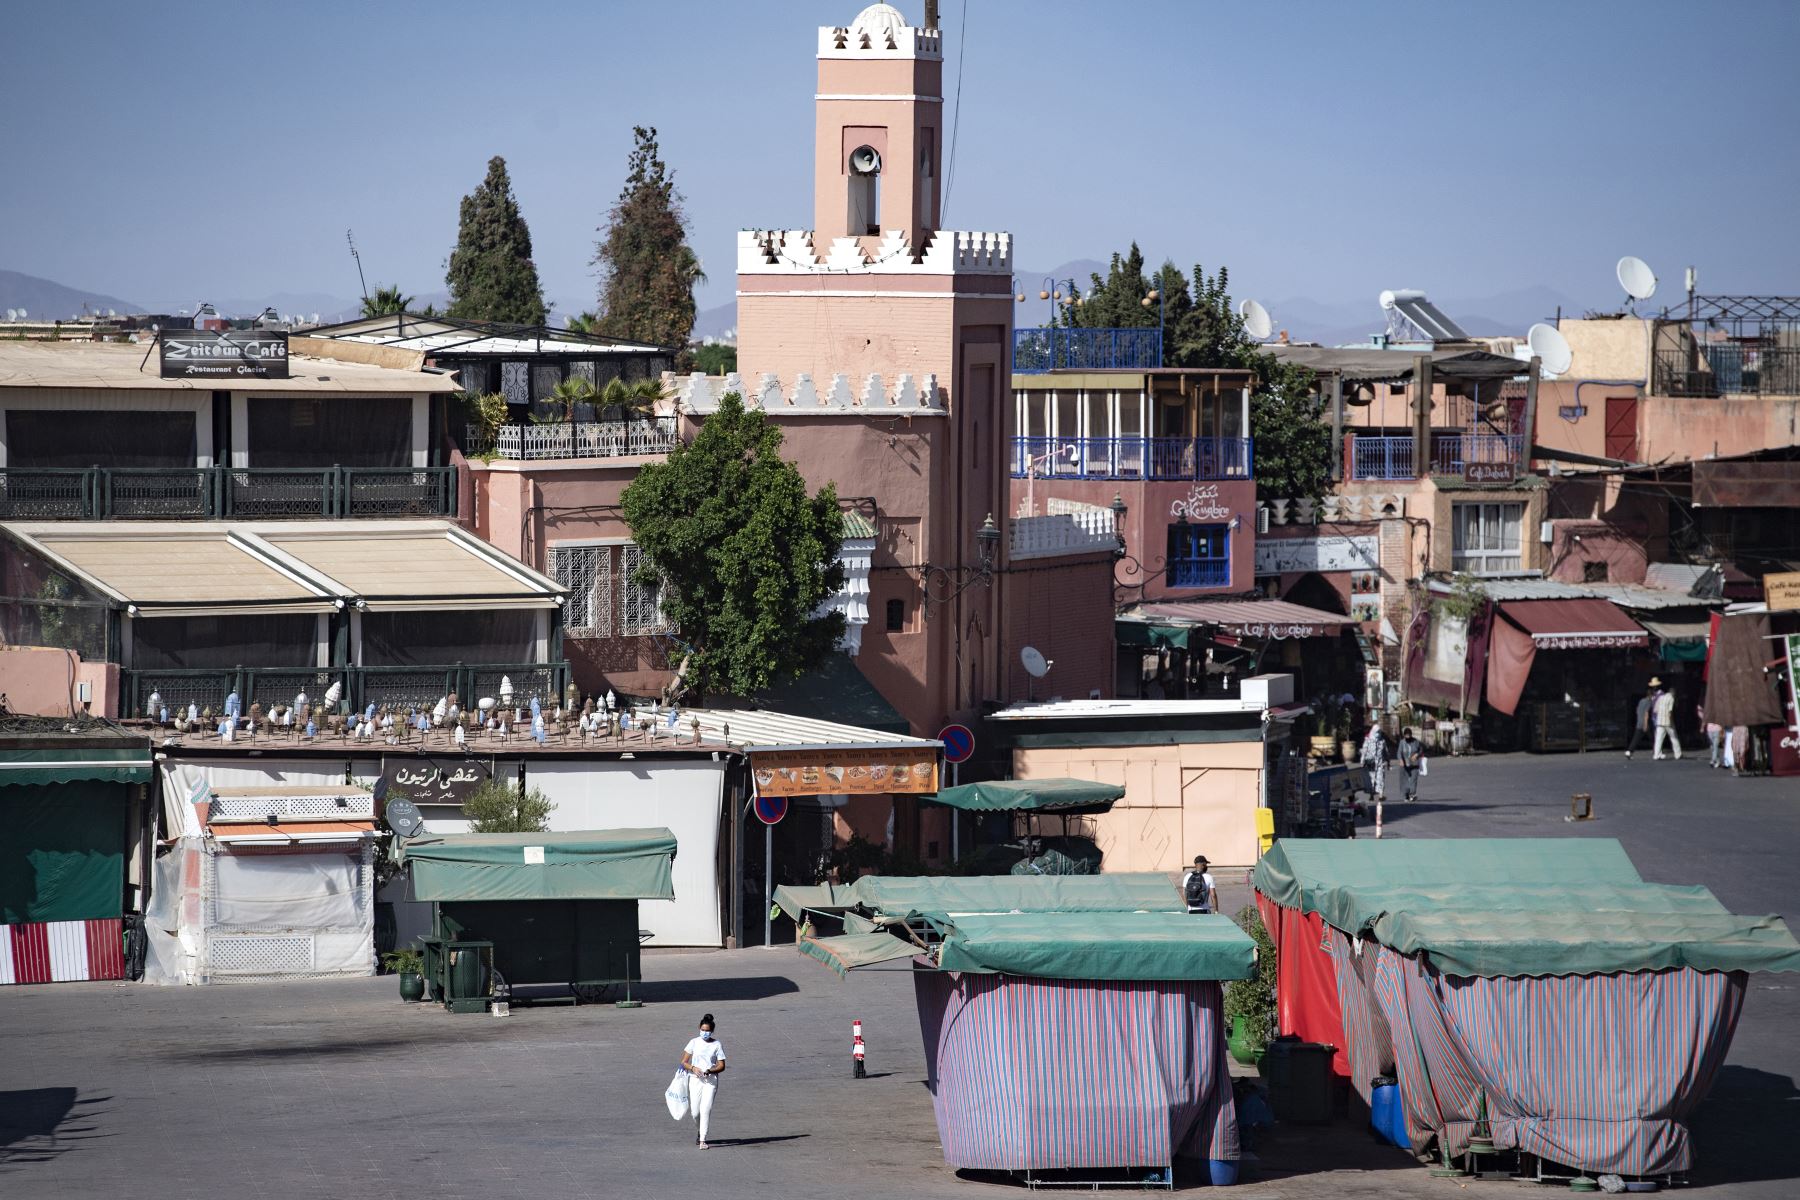 Algunas personas, con mascarillas, pasan por la plaza Jemaa el-Fna en la ciudad marroquí de Marrakech, actualmente vacía de sus multitudes habituales debido a la pandemia de Covid-19. Foto: AFP